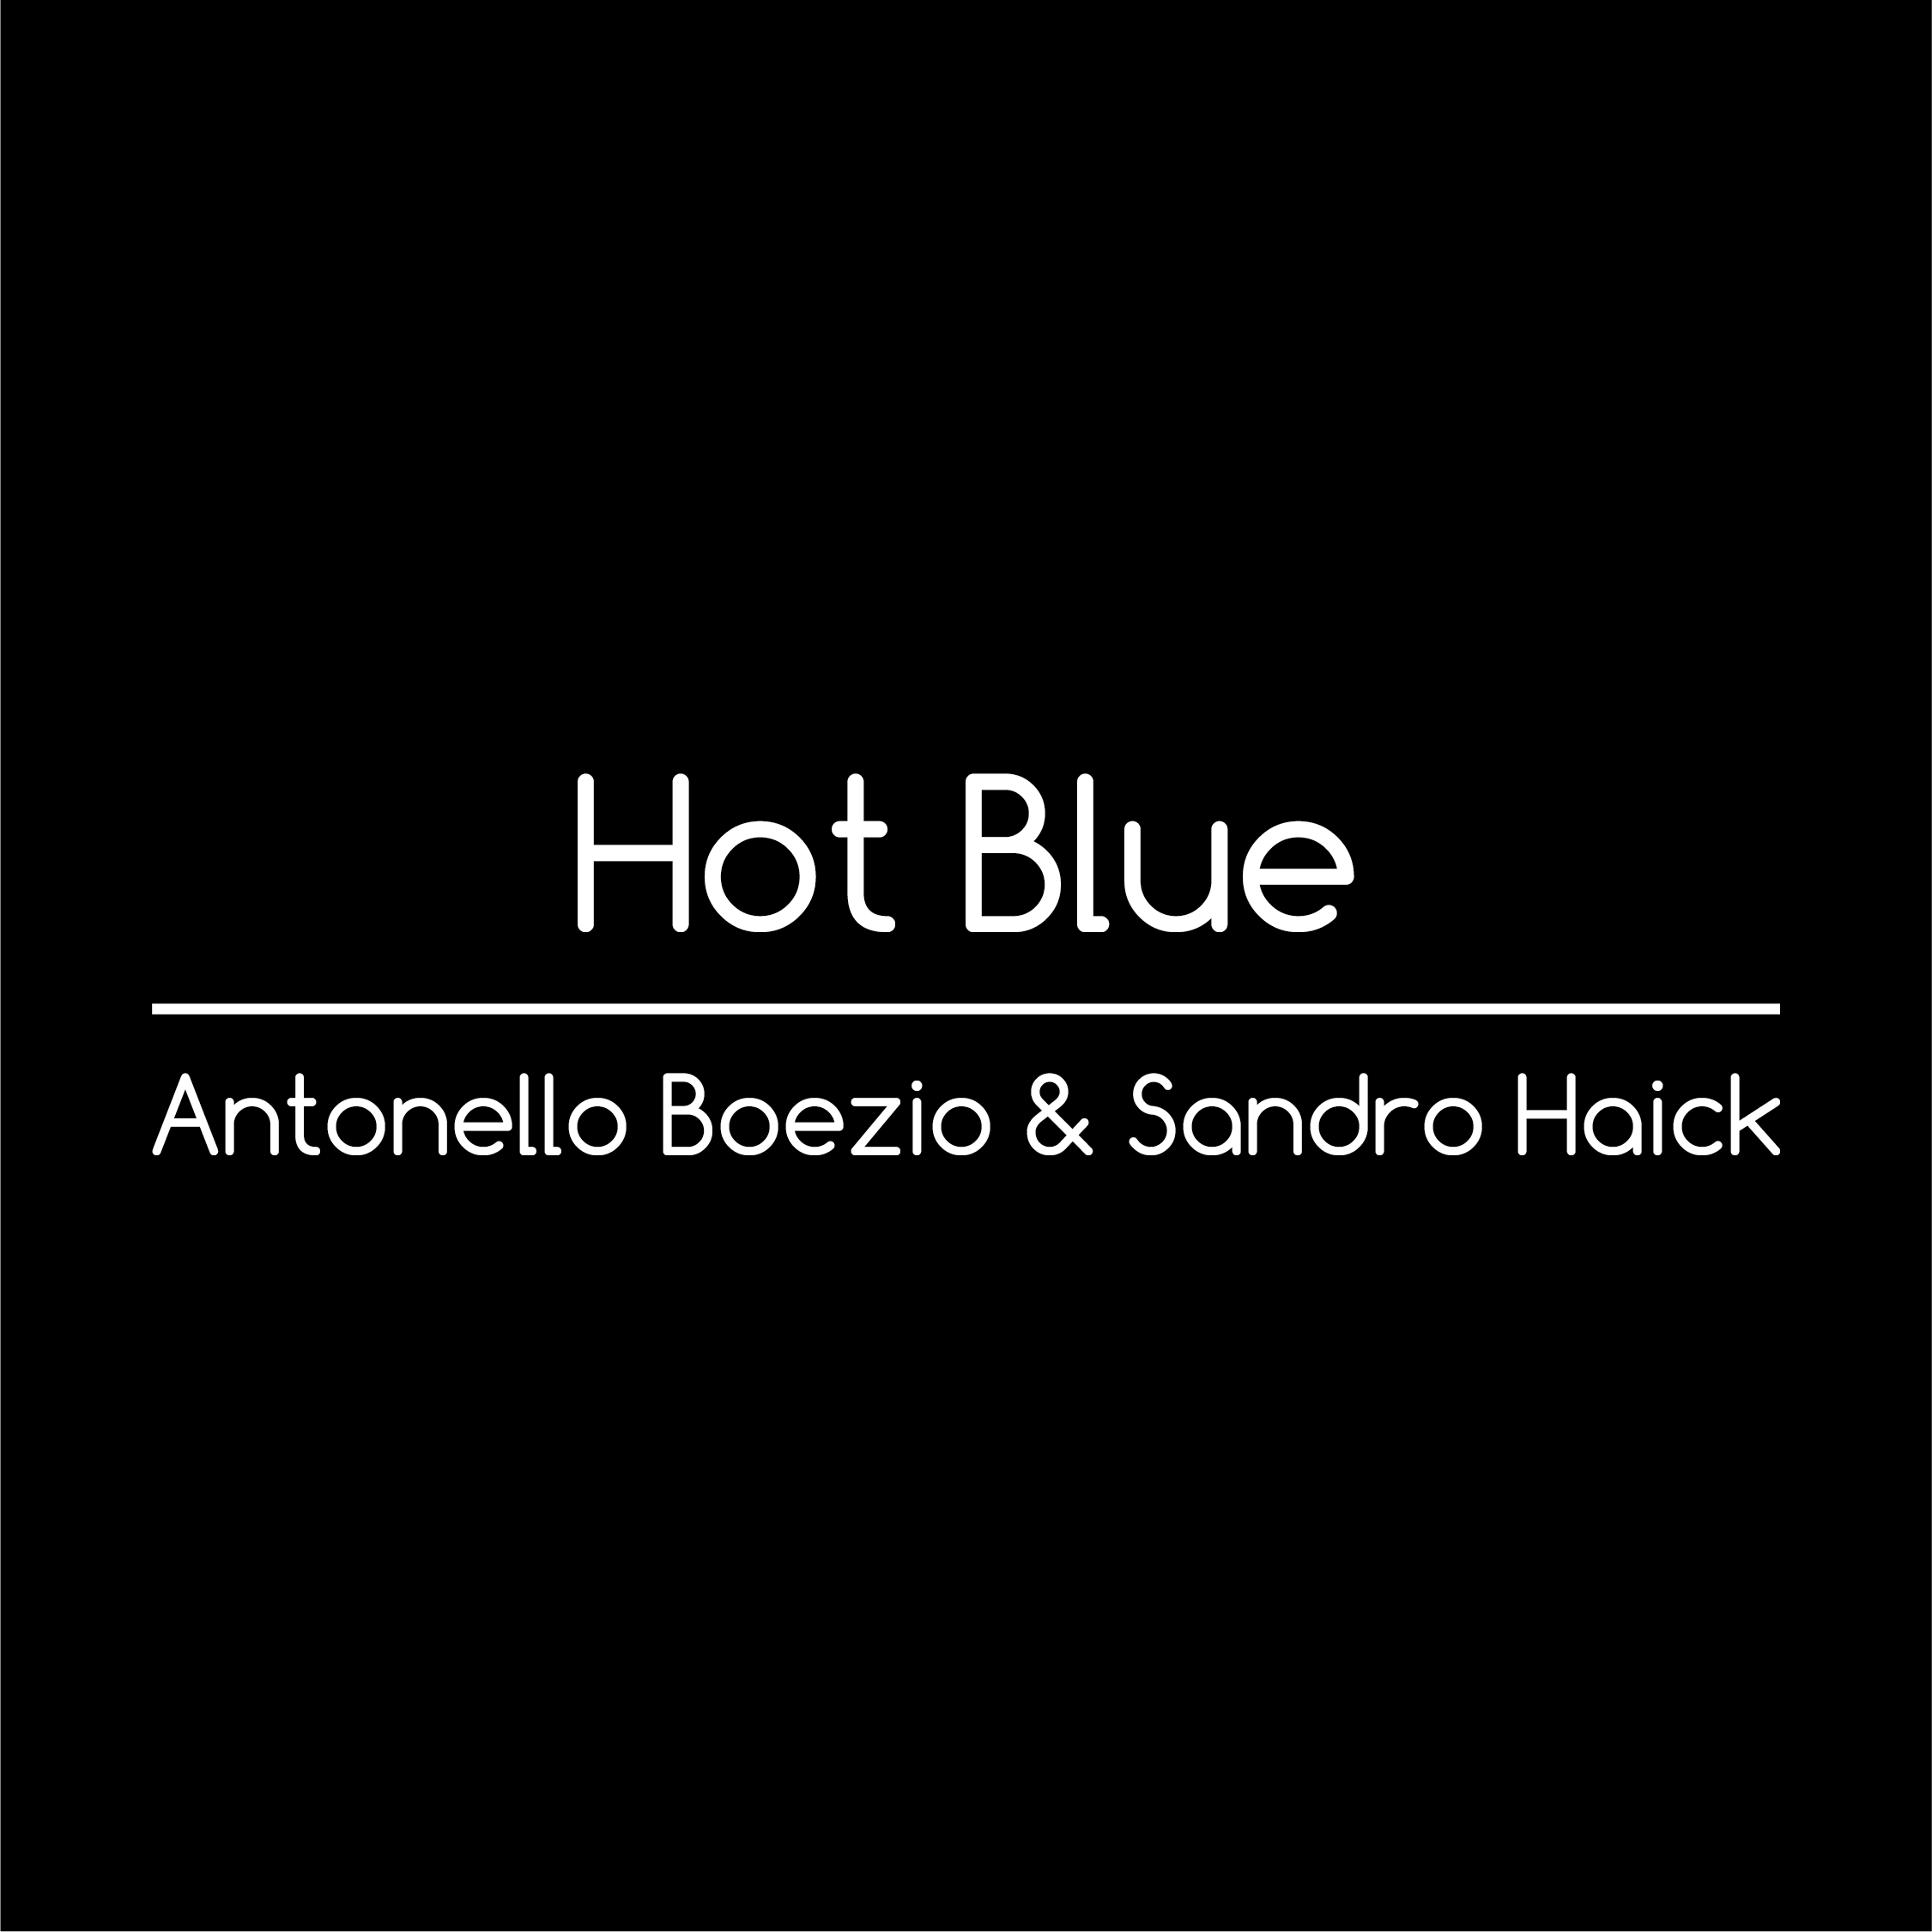 Hot blue - Antonello Boezio